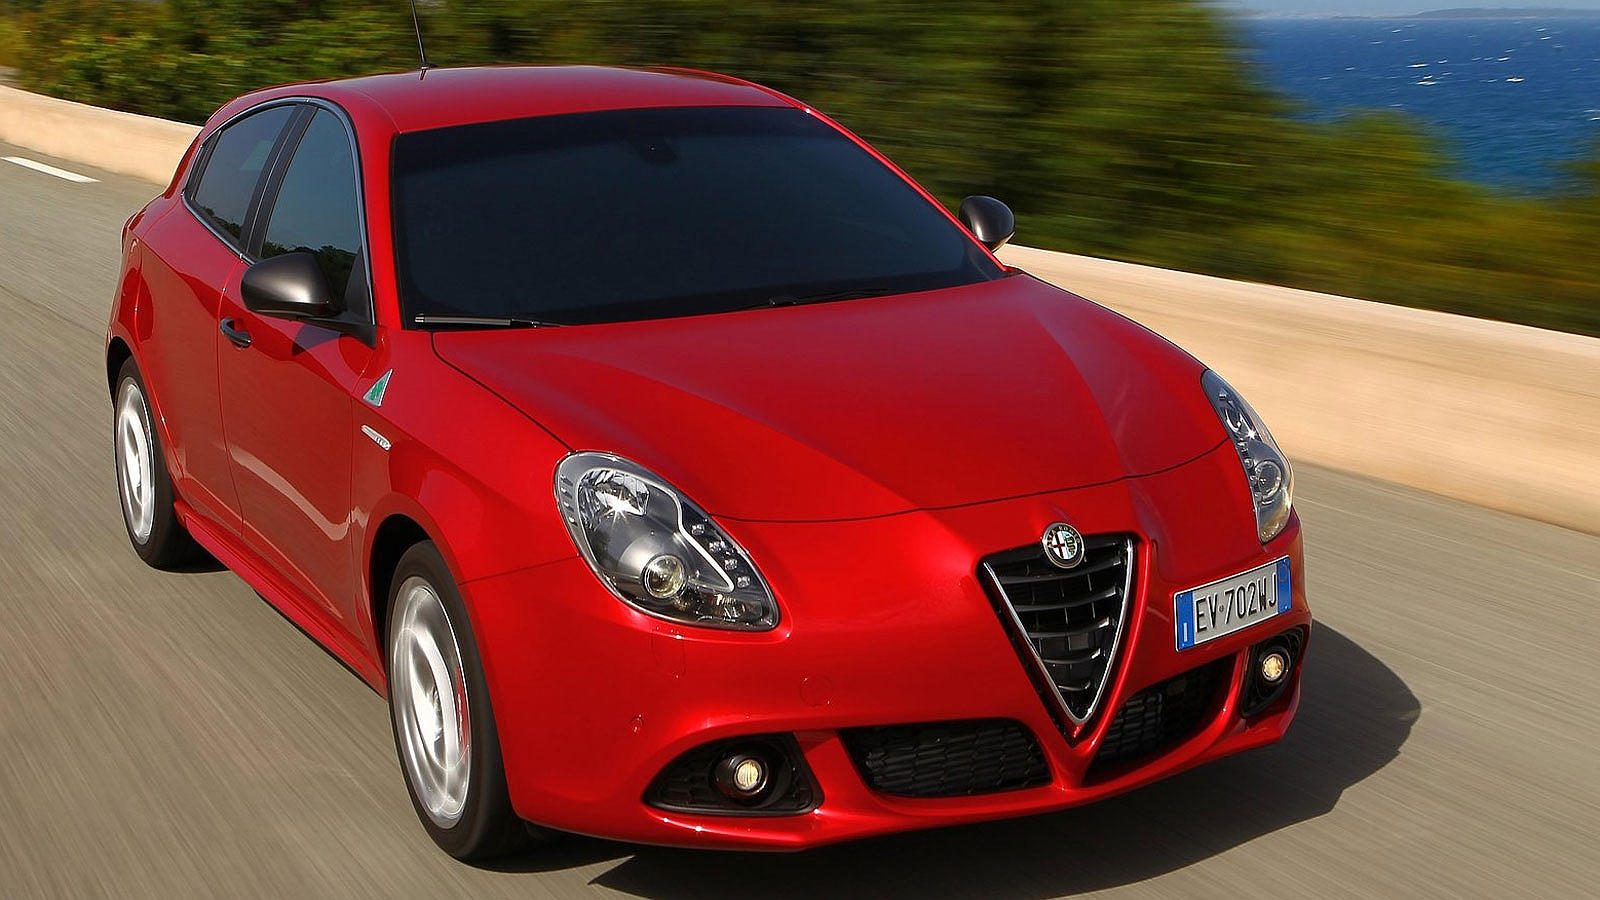 El dinamismo sigue siendo nota dominante en Alfa Romeo; el Giulietta no es excepción